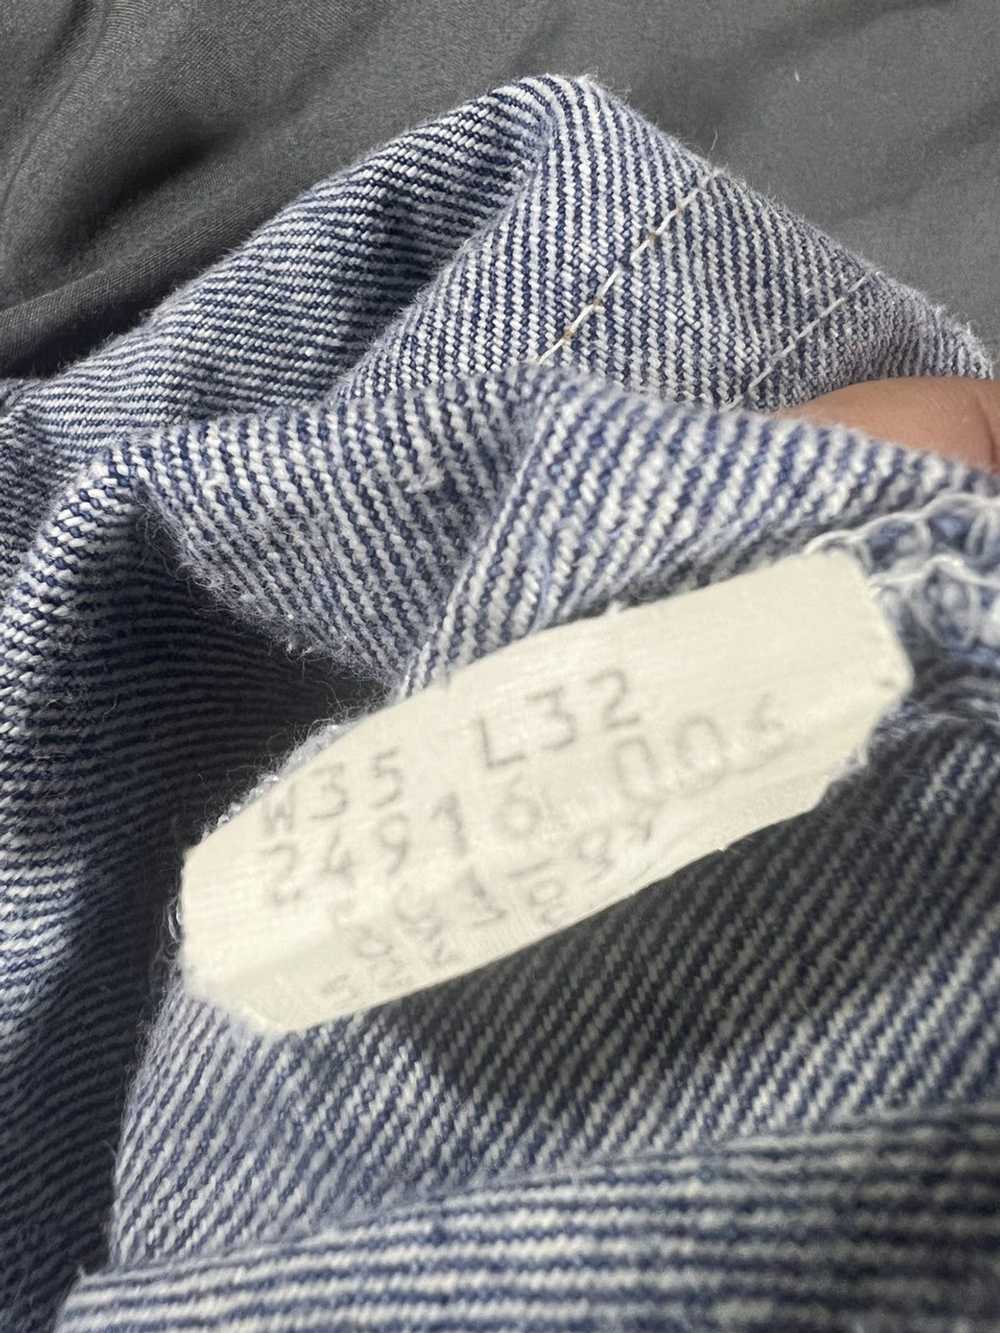 Levi's Levi’s 501 jeans - image 6